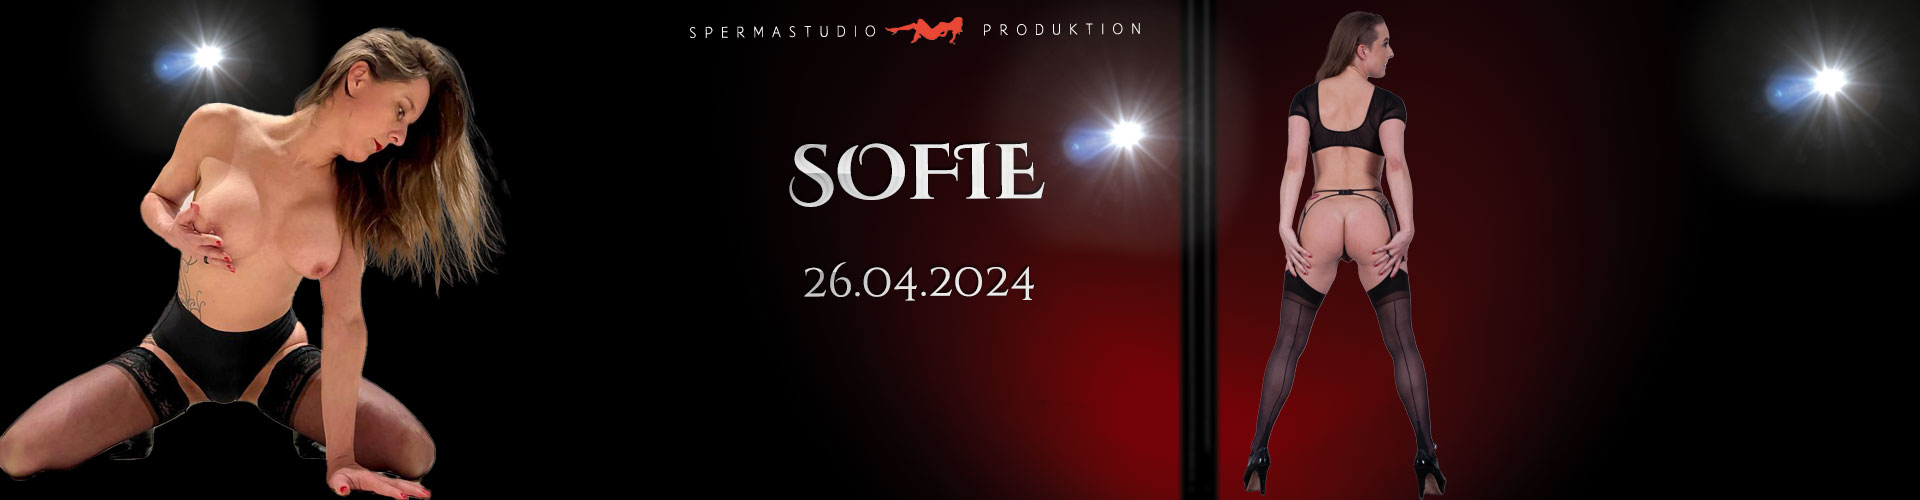 Produktion mit Sofie am 26.04.2024